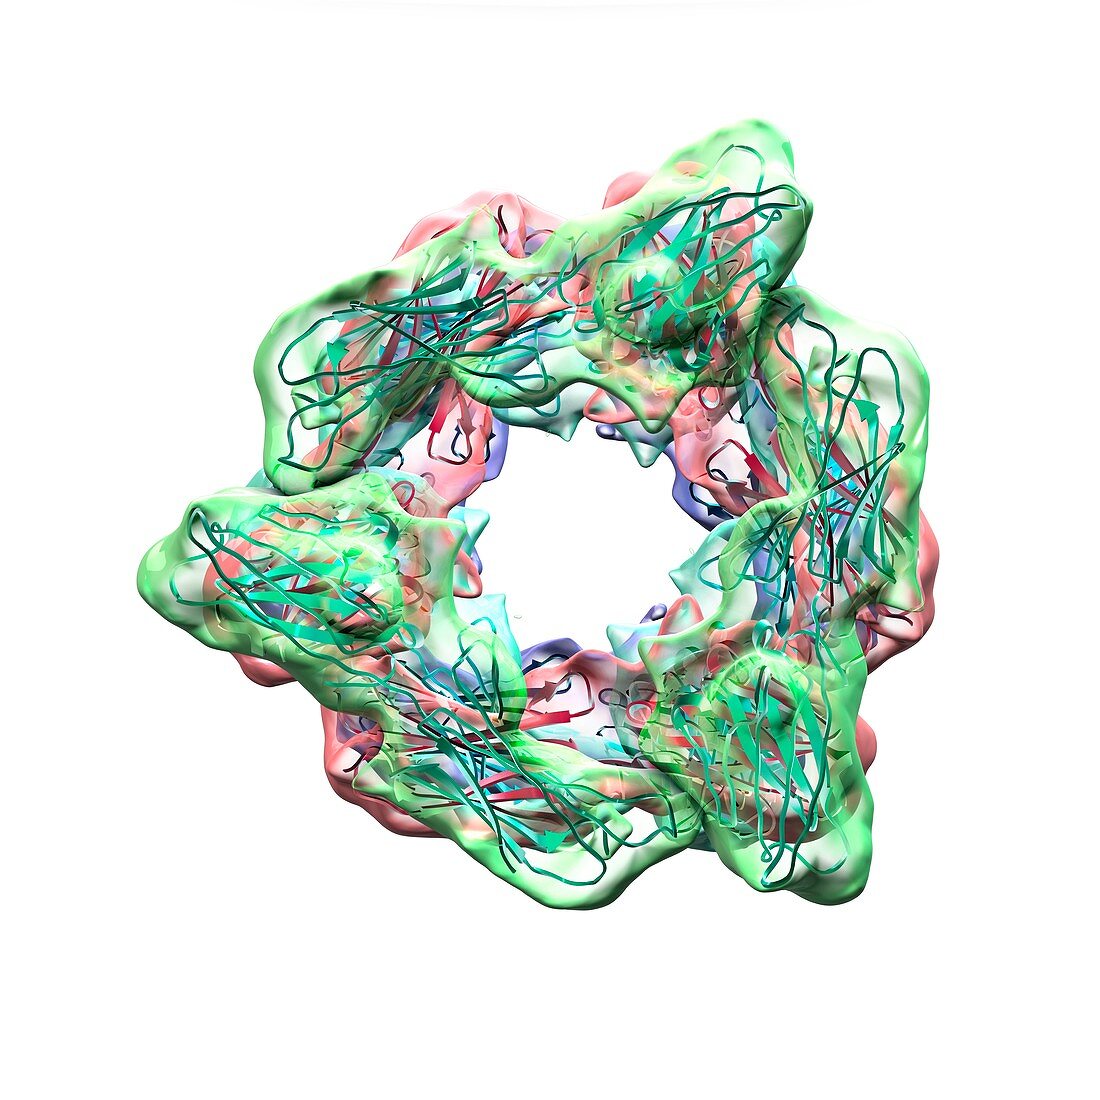 Epstein Barr virus proteins,artwork